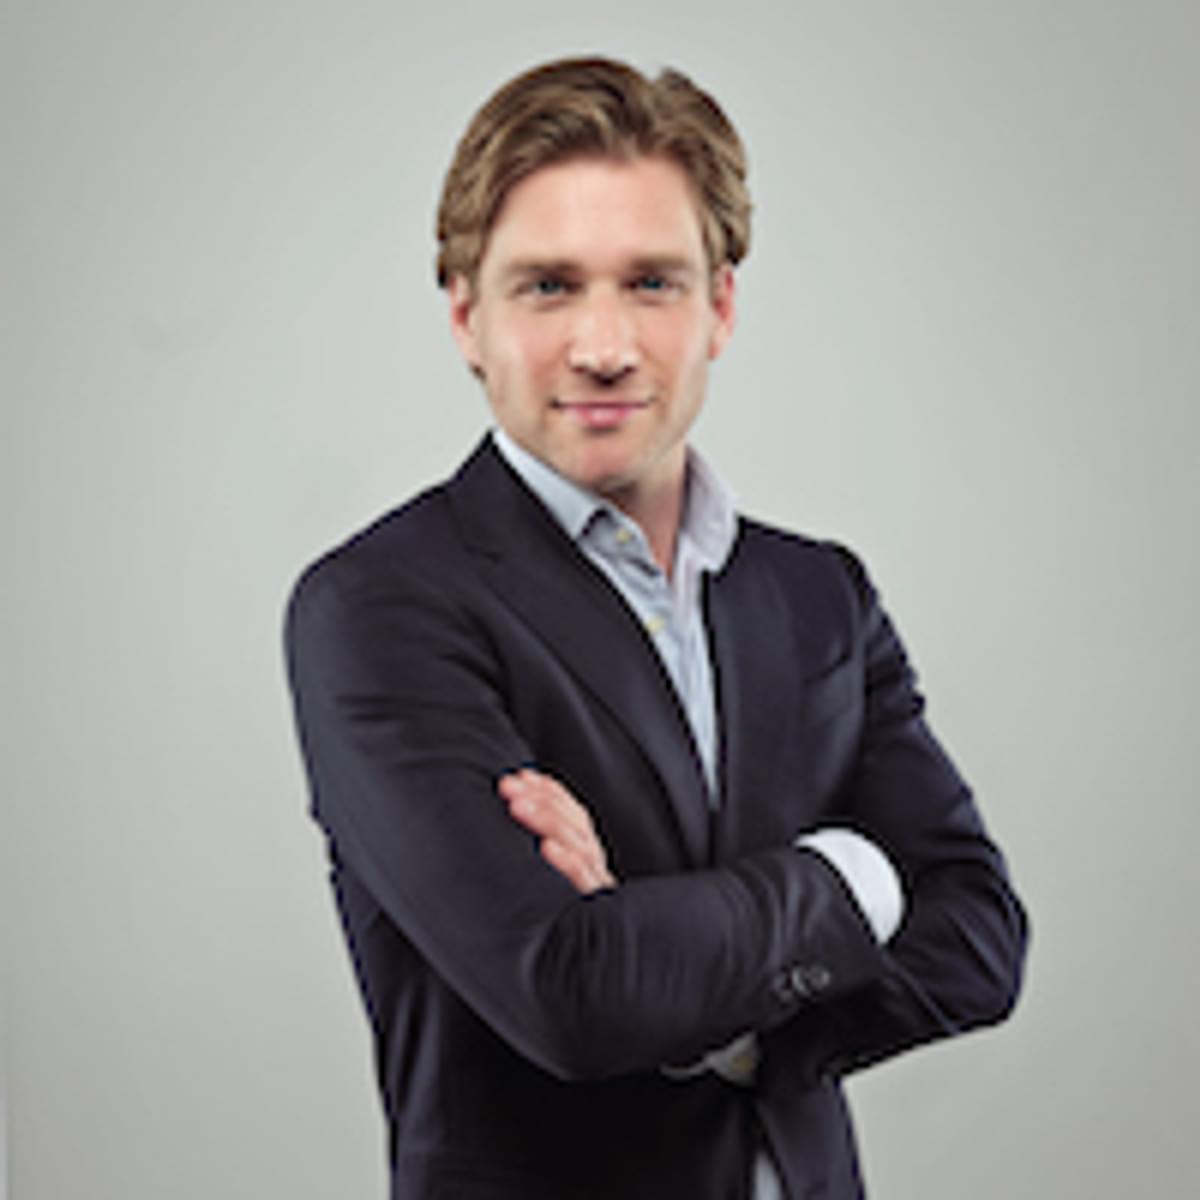 Tijmen Willems benoemd tot Country Manager Benelux bij Criteo image